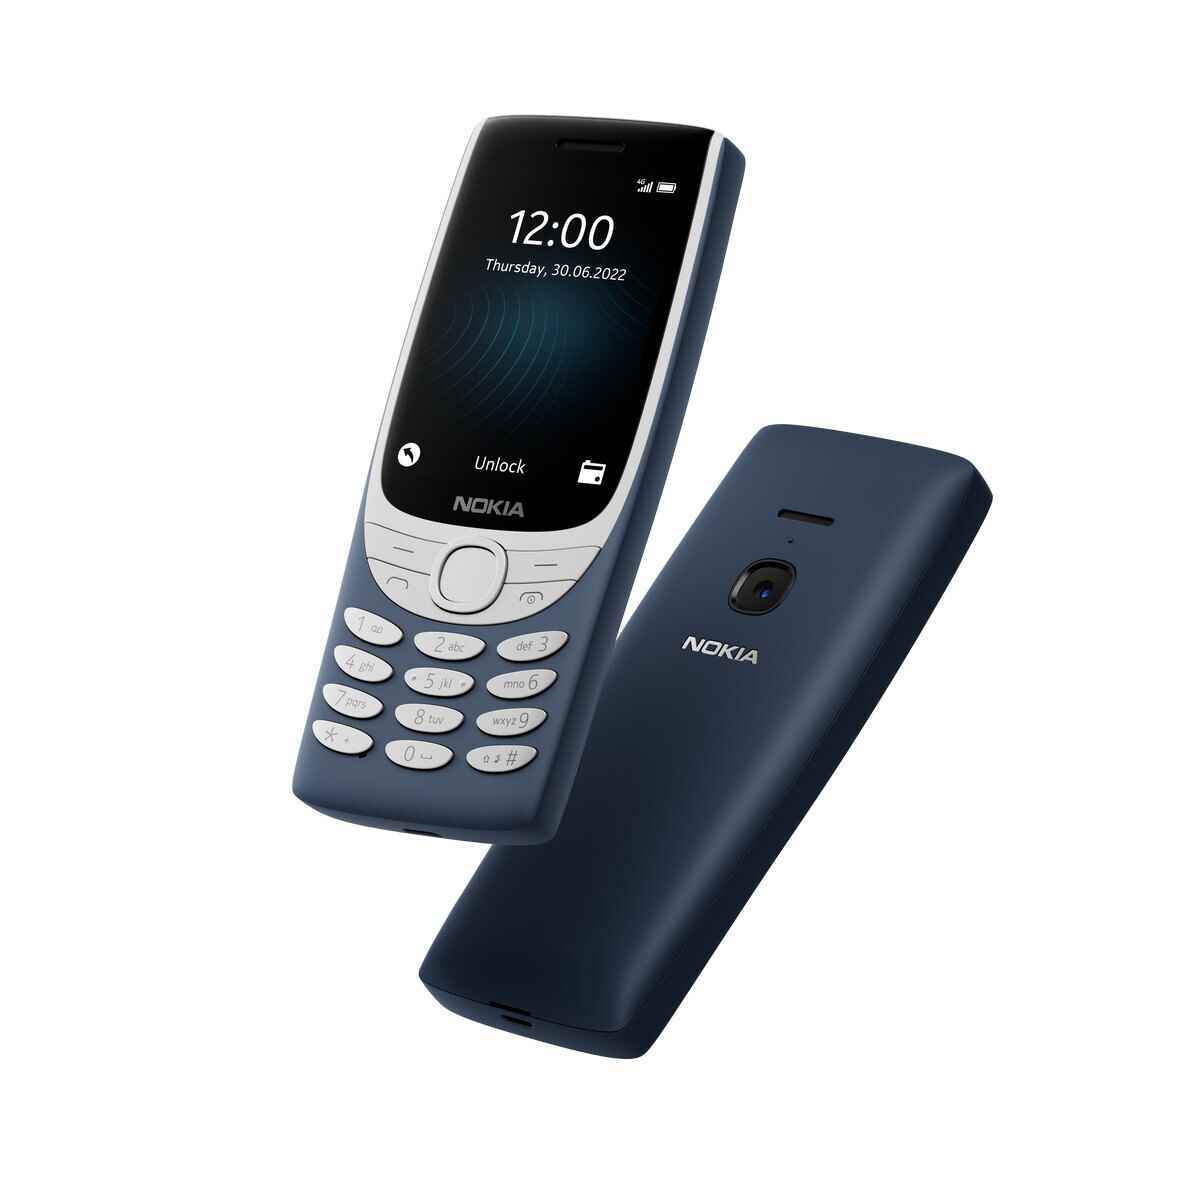 Nokia 8210 - Nokia, retro cazibesini üç özellikli telefon ve Android tablet ile geri getiriyor